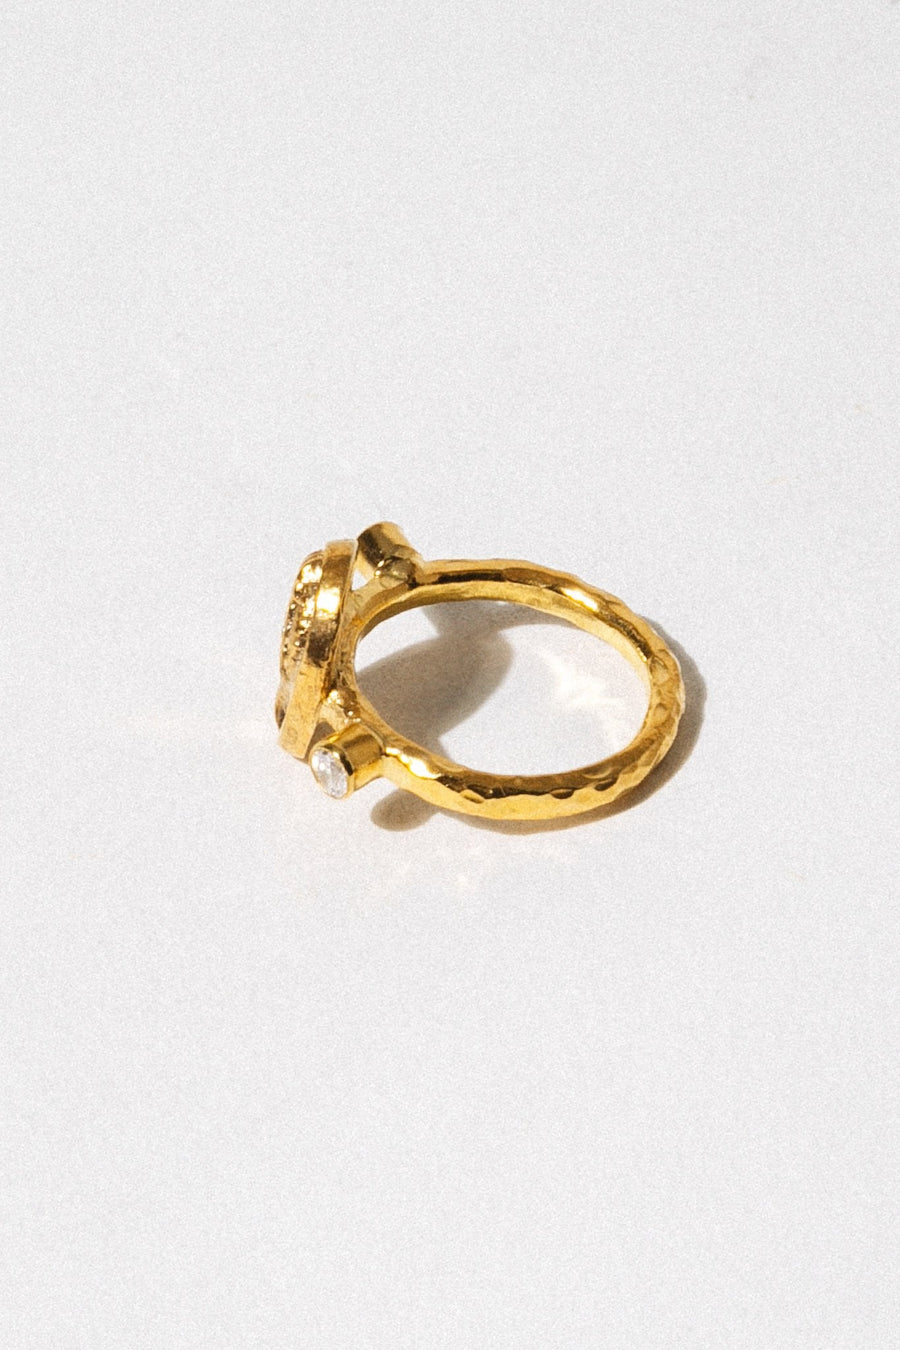 CAPRIXUS Jewelry Apollo Signet Ring